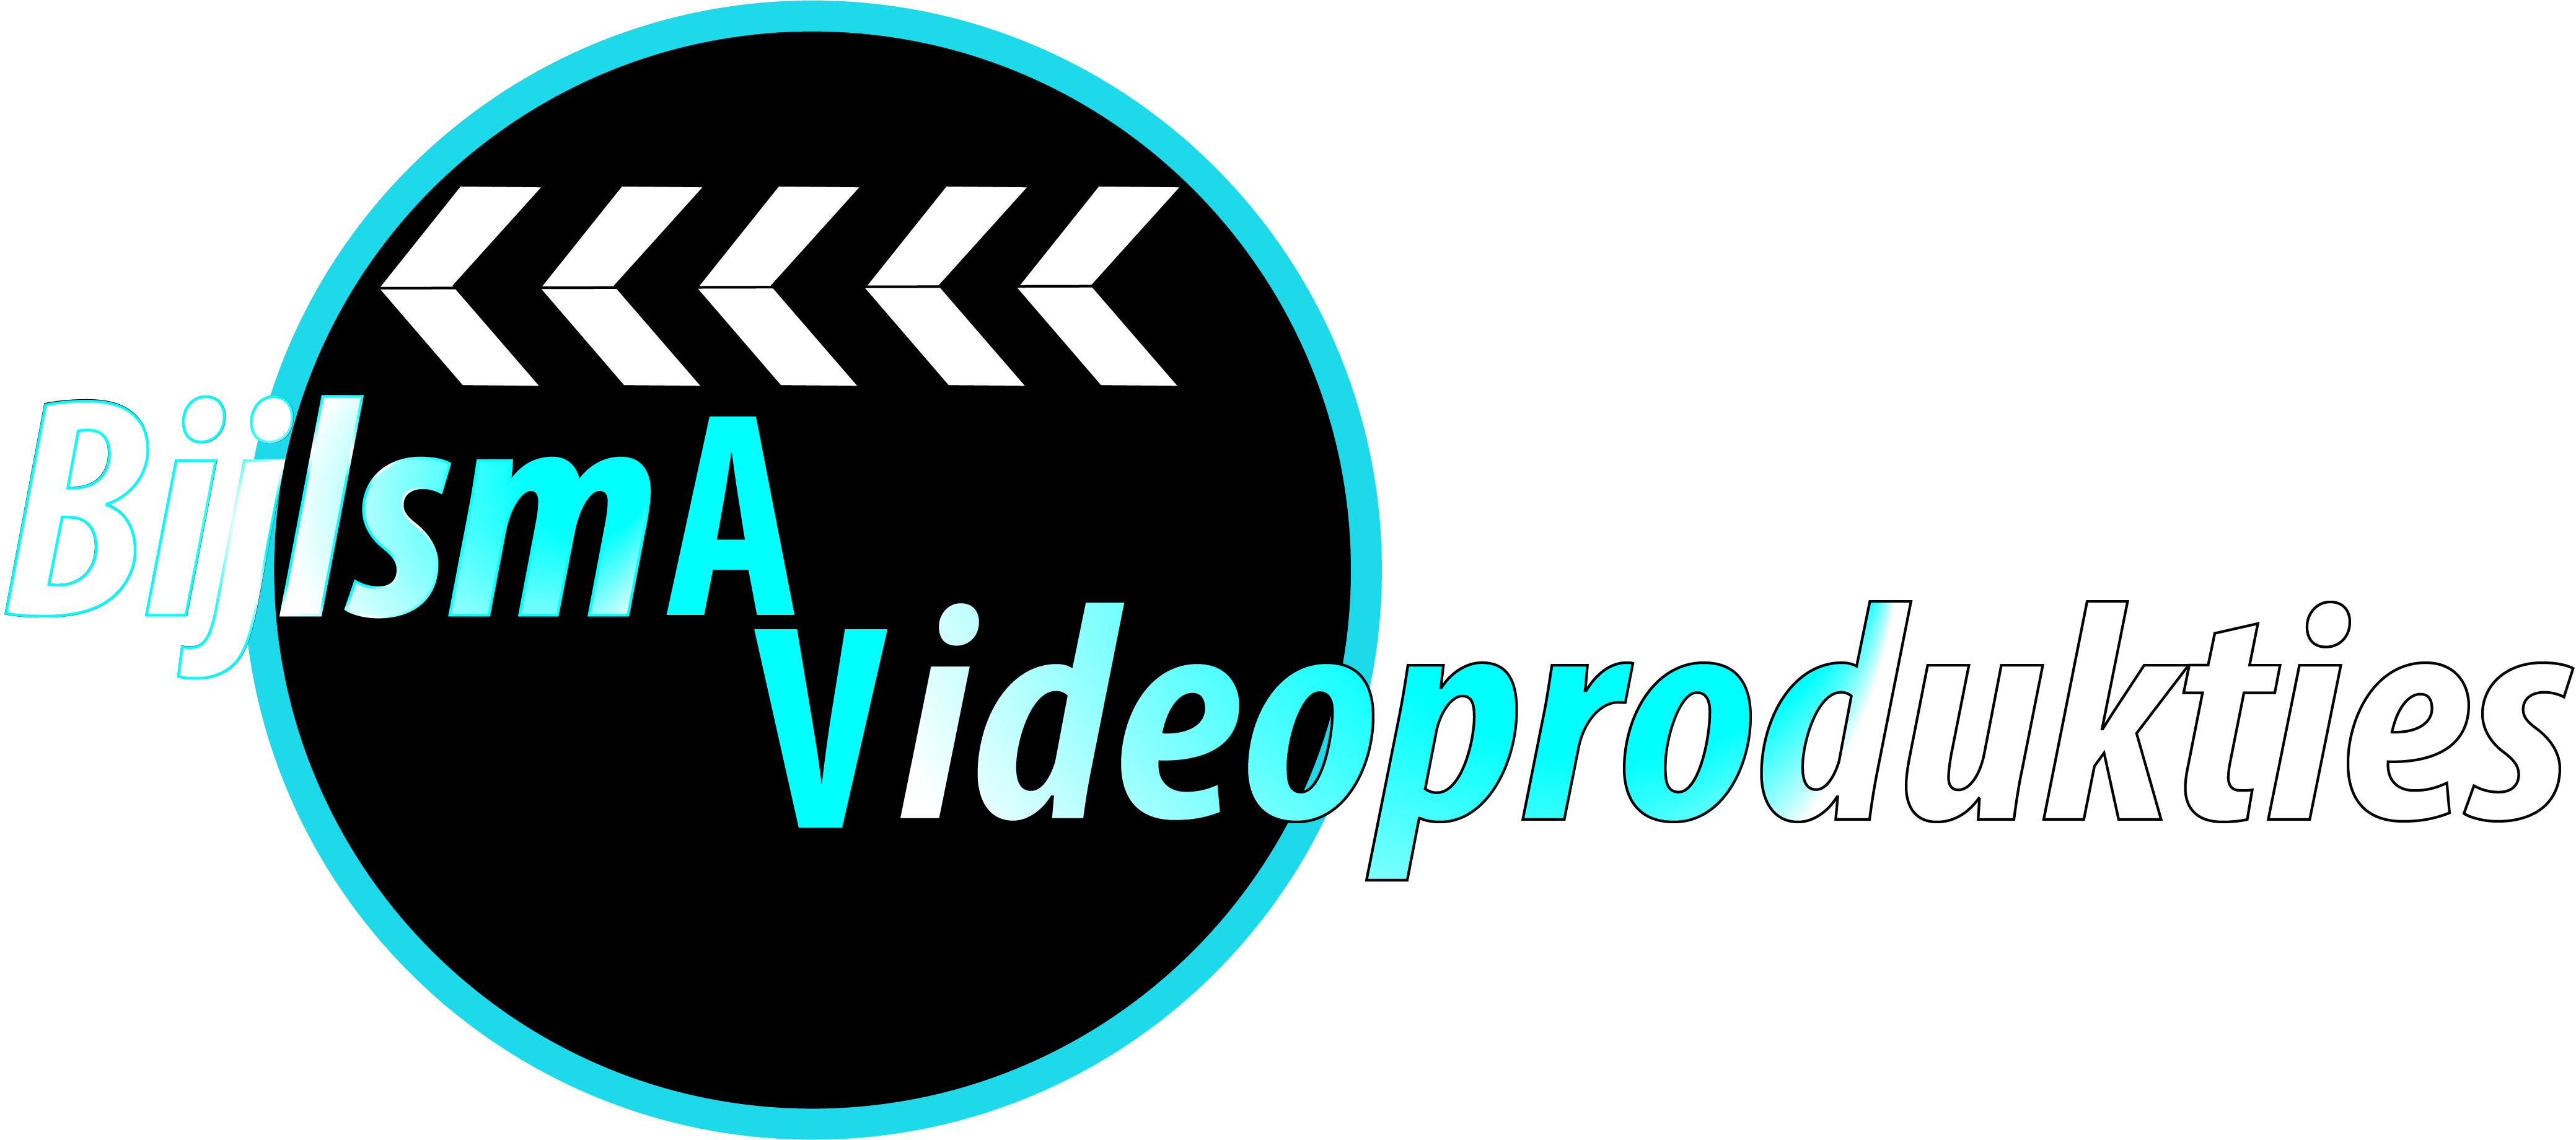 Bedrijfsvideo, bruiloften, animaties | Bijlsmavideoprodukties.nl - Wij bieden een compleet pakket voor jouw bedrijf!